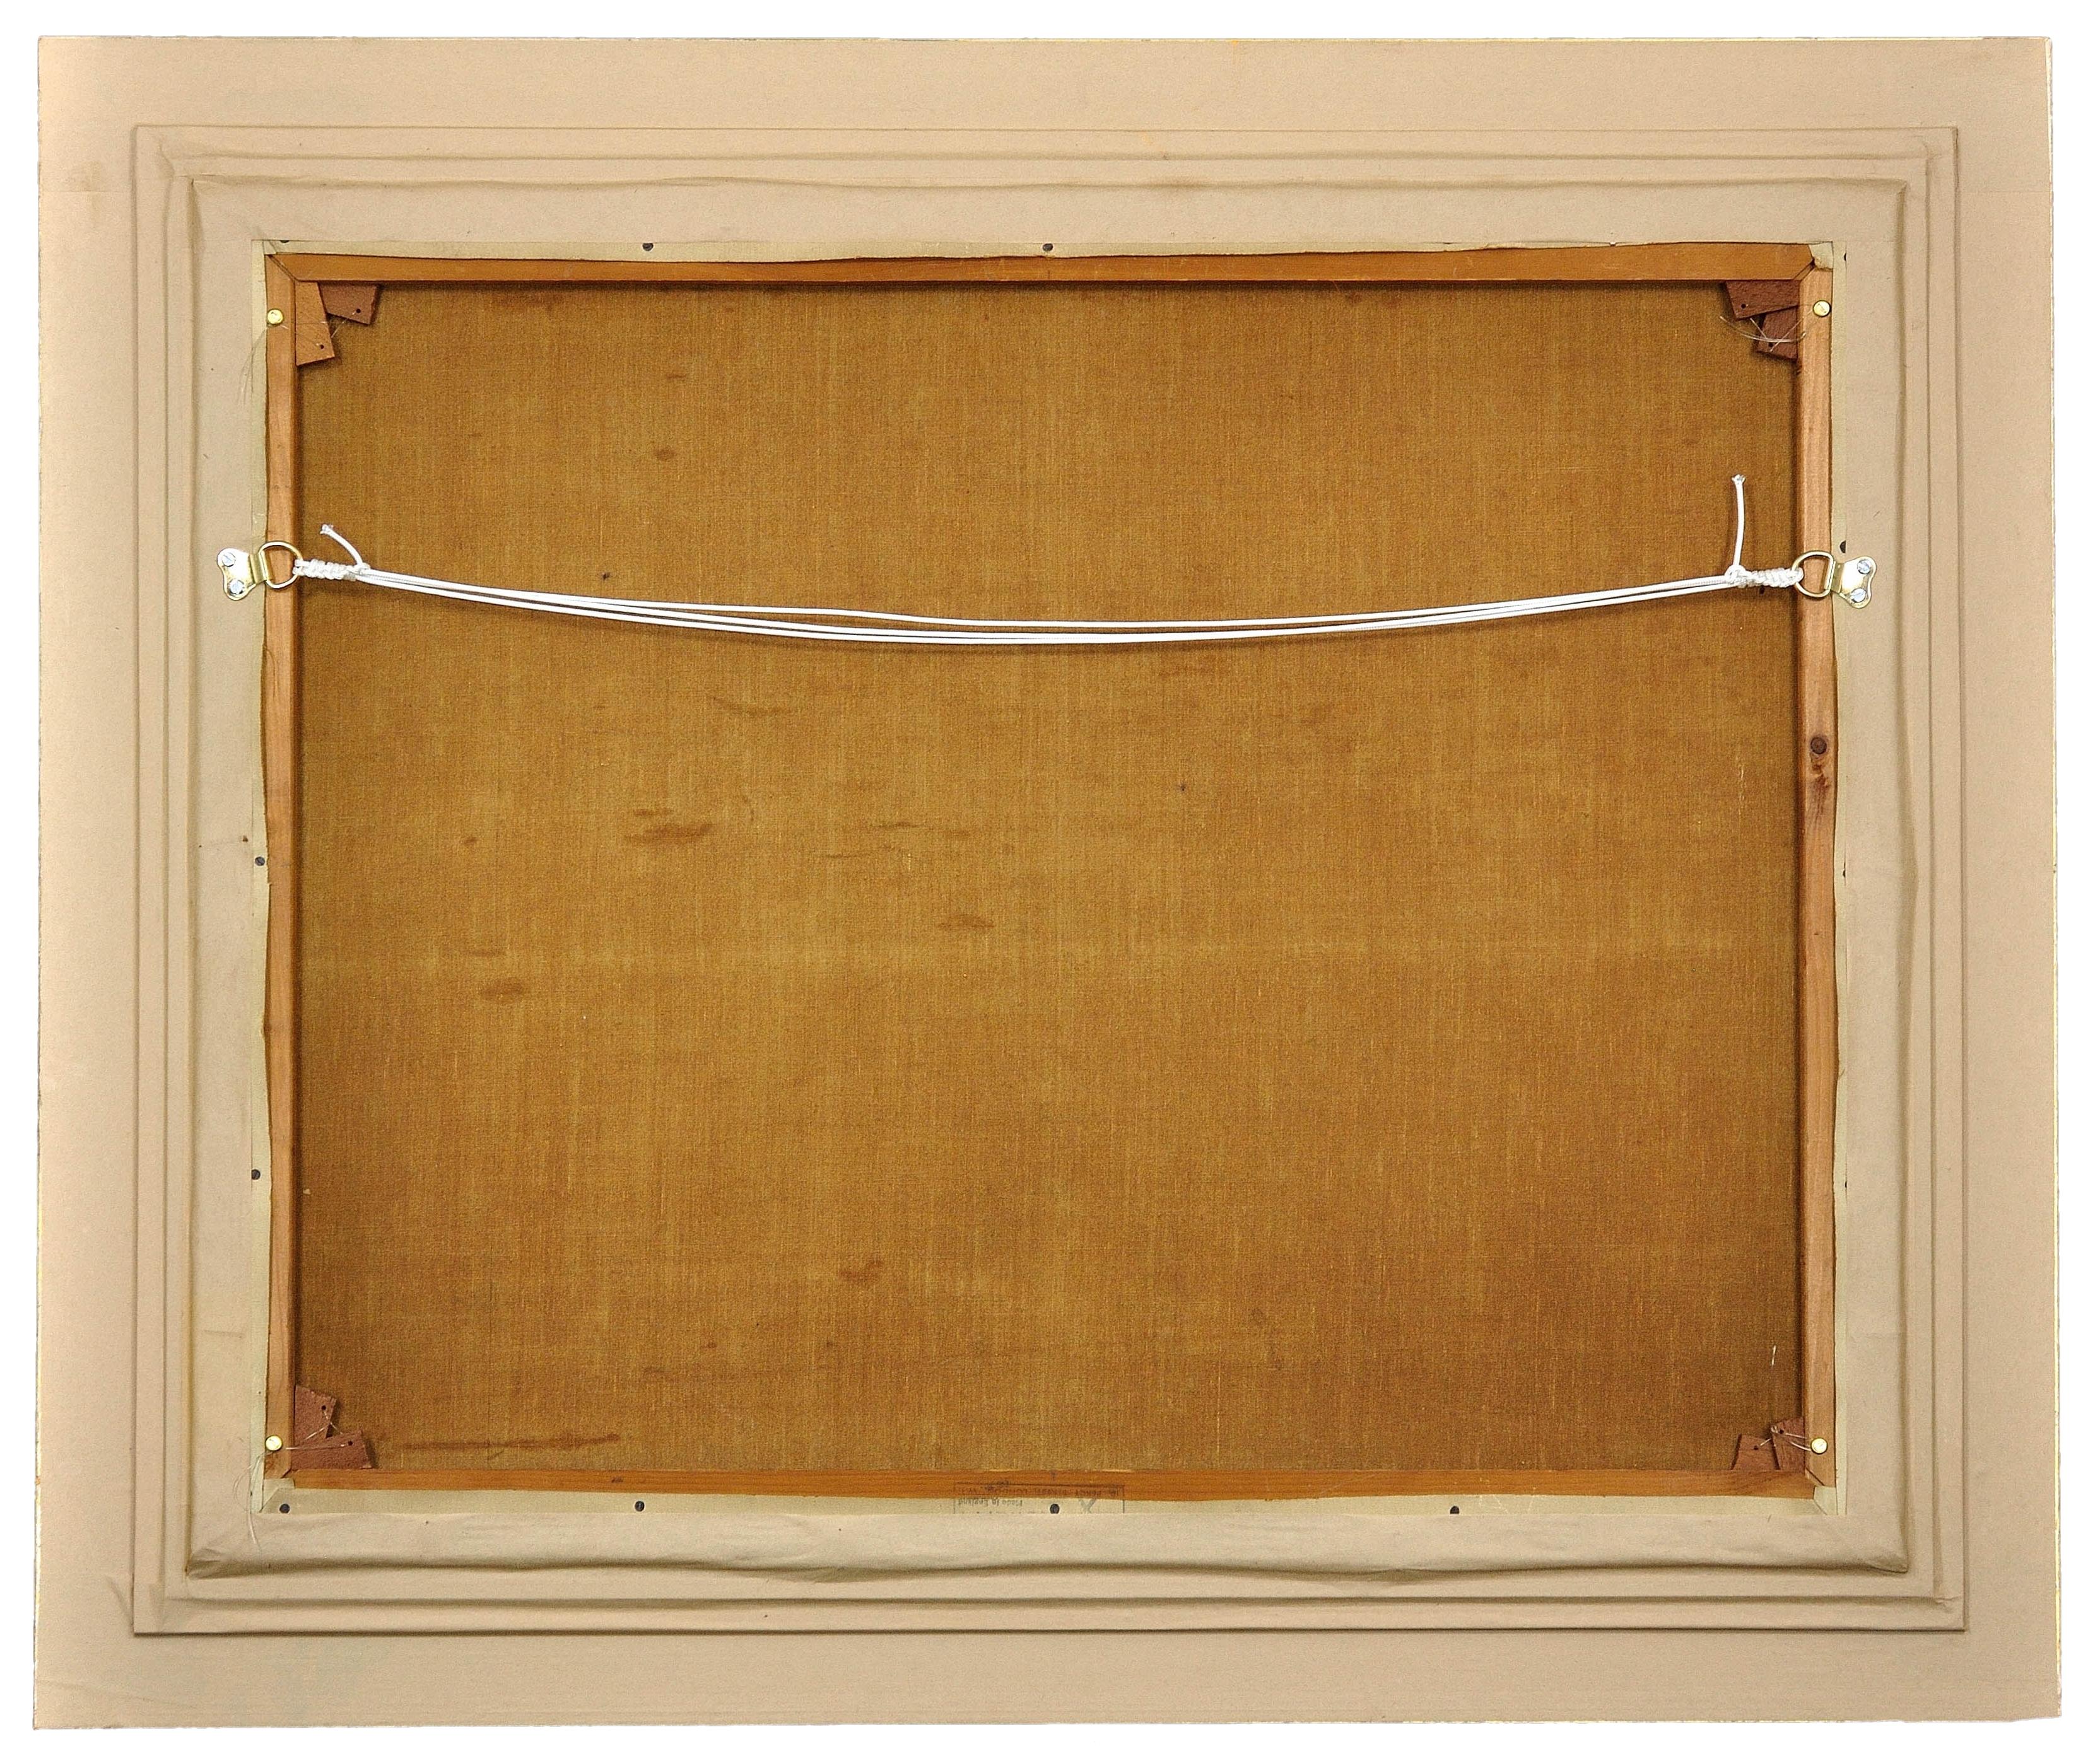 Harold Walton Freckleton.
Englisch ( geb.1890 - gest.1979 ).
Milly mit Minstrel.
Öl auf Leinwand.
Signiert unten rechts.
Bildgröße 24,4 Zoll x 29,52 Zoll (62cm x 75cm).
Rahmengröße 30,7 Zoll x 35,8 Zoll (78cm x 91cm).

Dieses zum Verkauf stehende